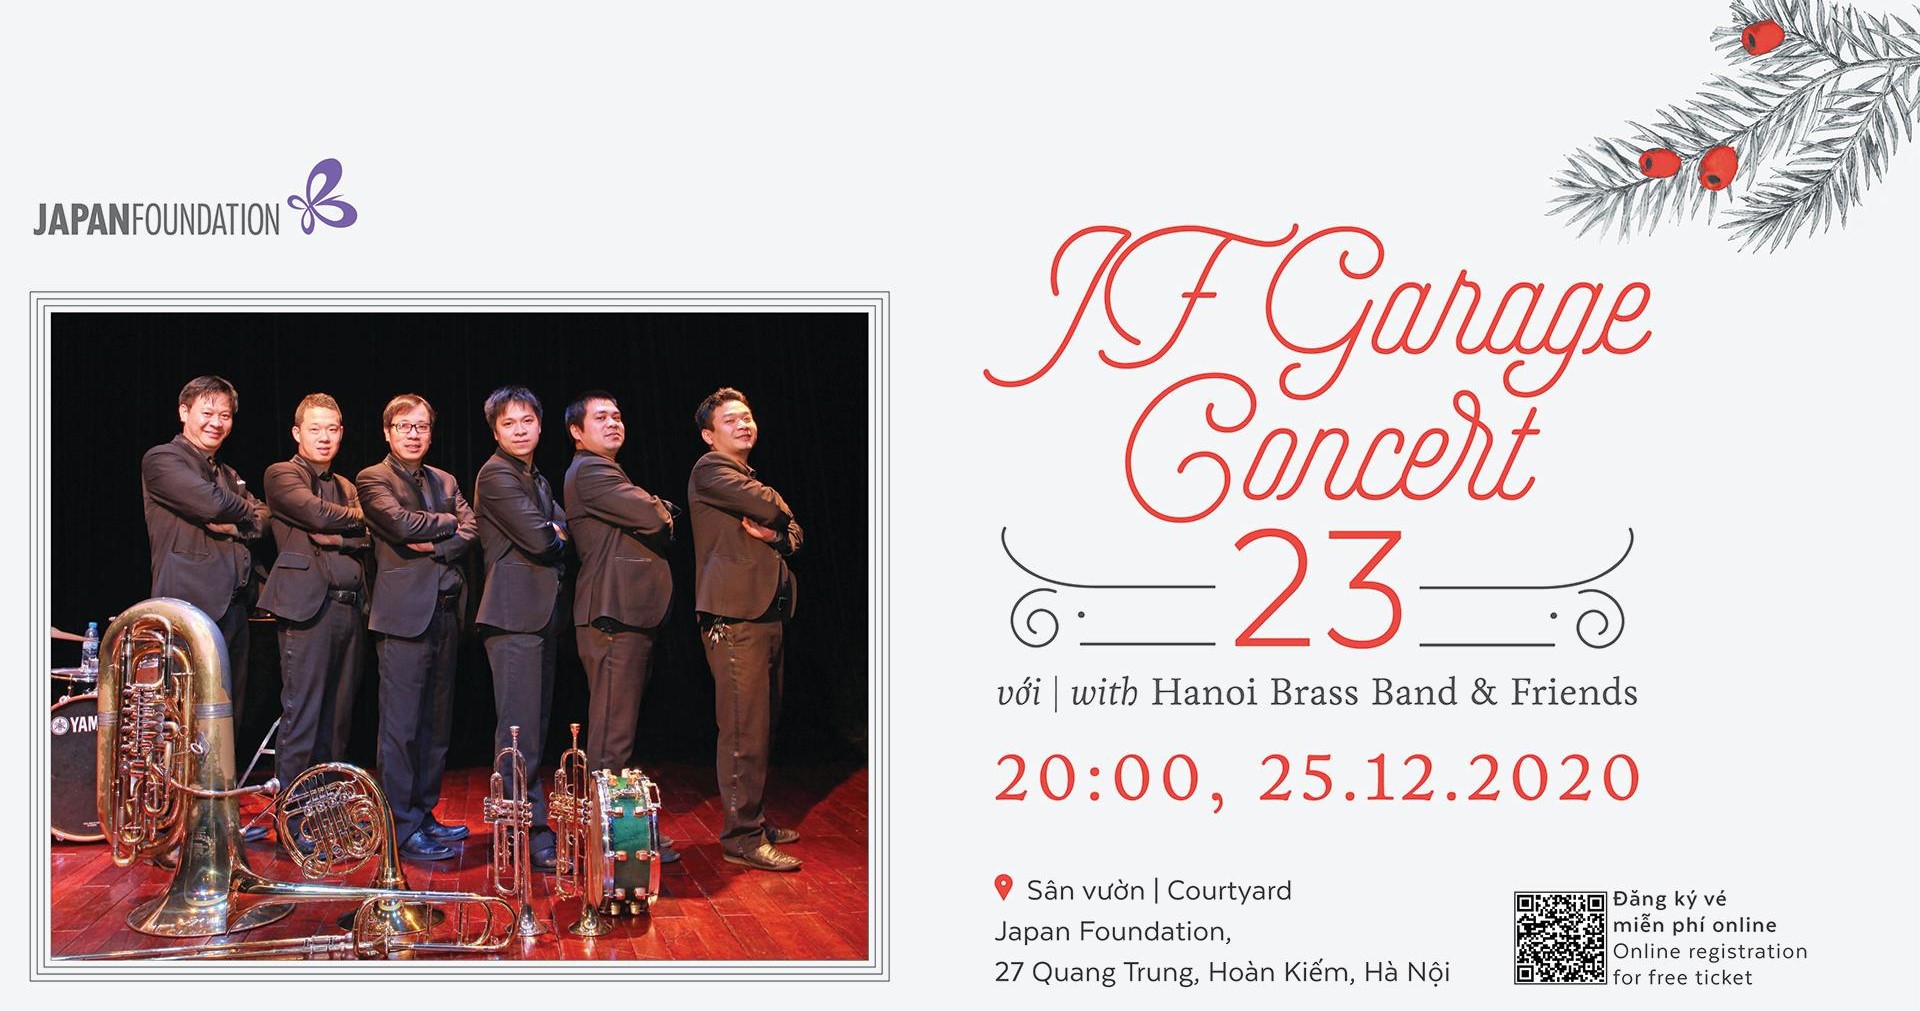 Hà Nội - JF Garage Concert 23 với Hanoi Brass Band & Những người bạn